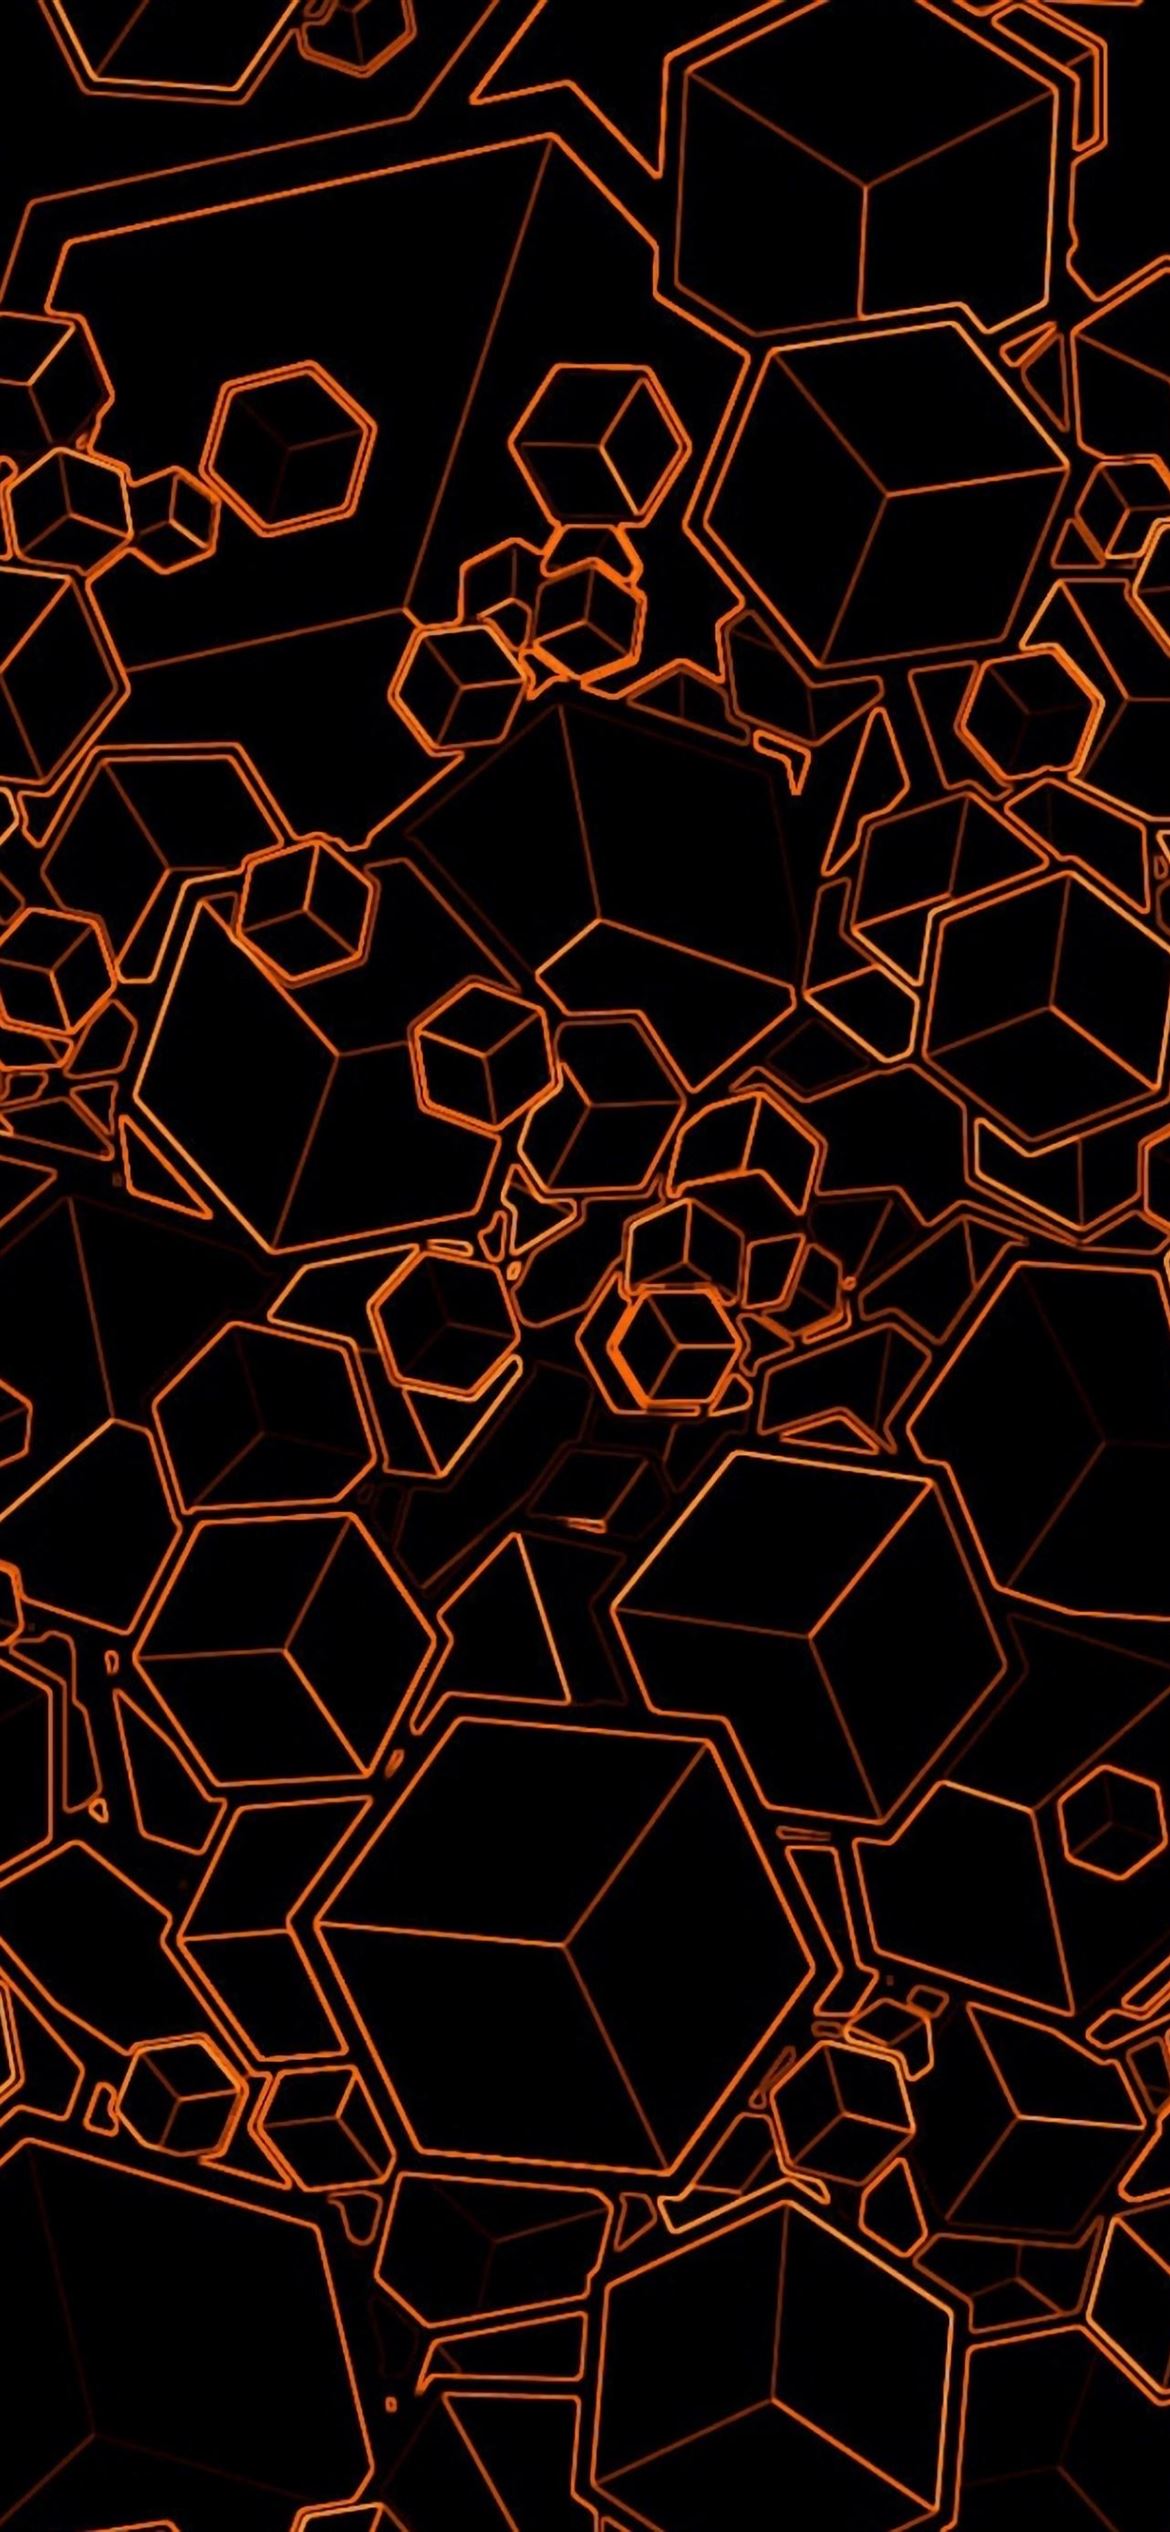 Orange Cubes iPhone Wallpaper Free Download